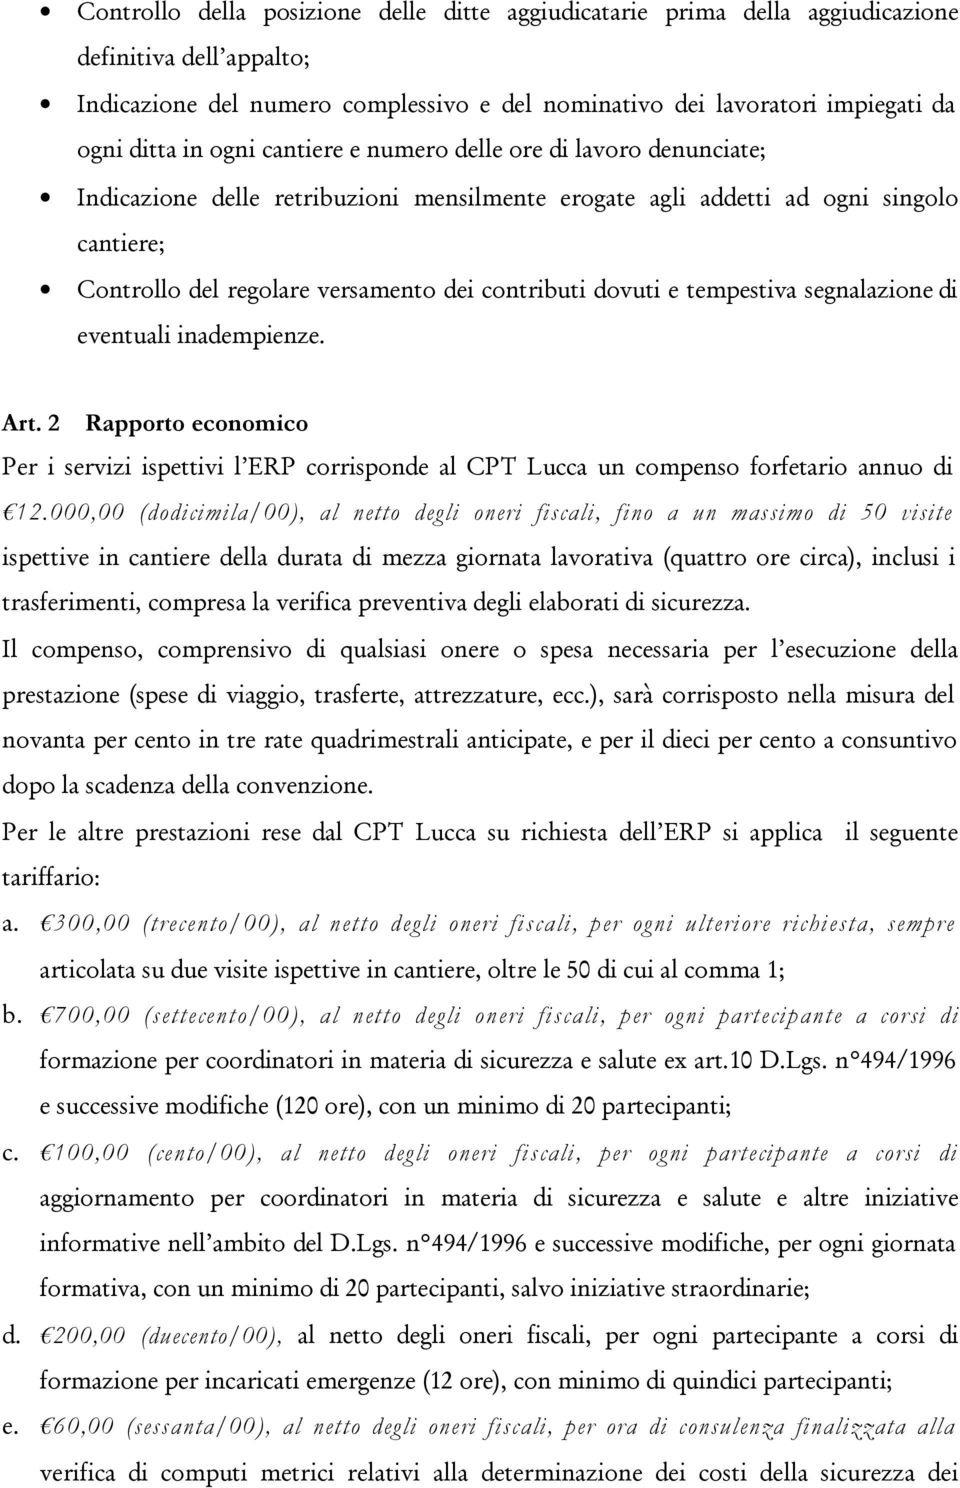 dovuti e tempestiva segnalazione di eventuali inadempienze. Art. 2 Rapporto economico Per i servizi ispettivi l ERP corrisponde al CPT Lucca un compenso forfetario annuo di 12.